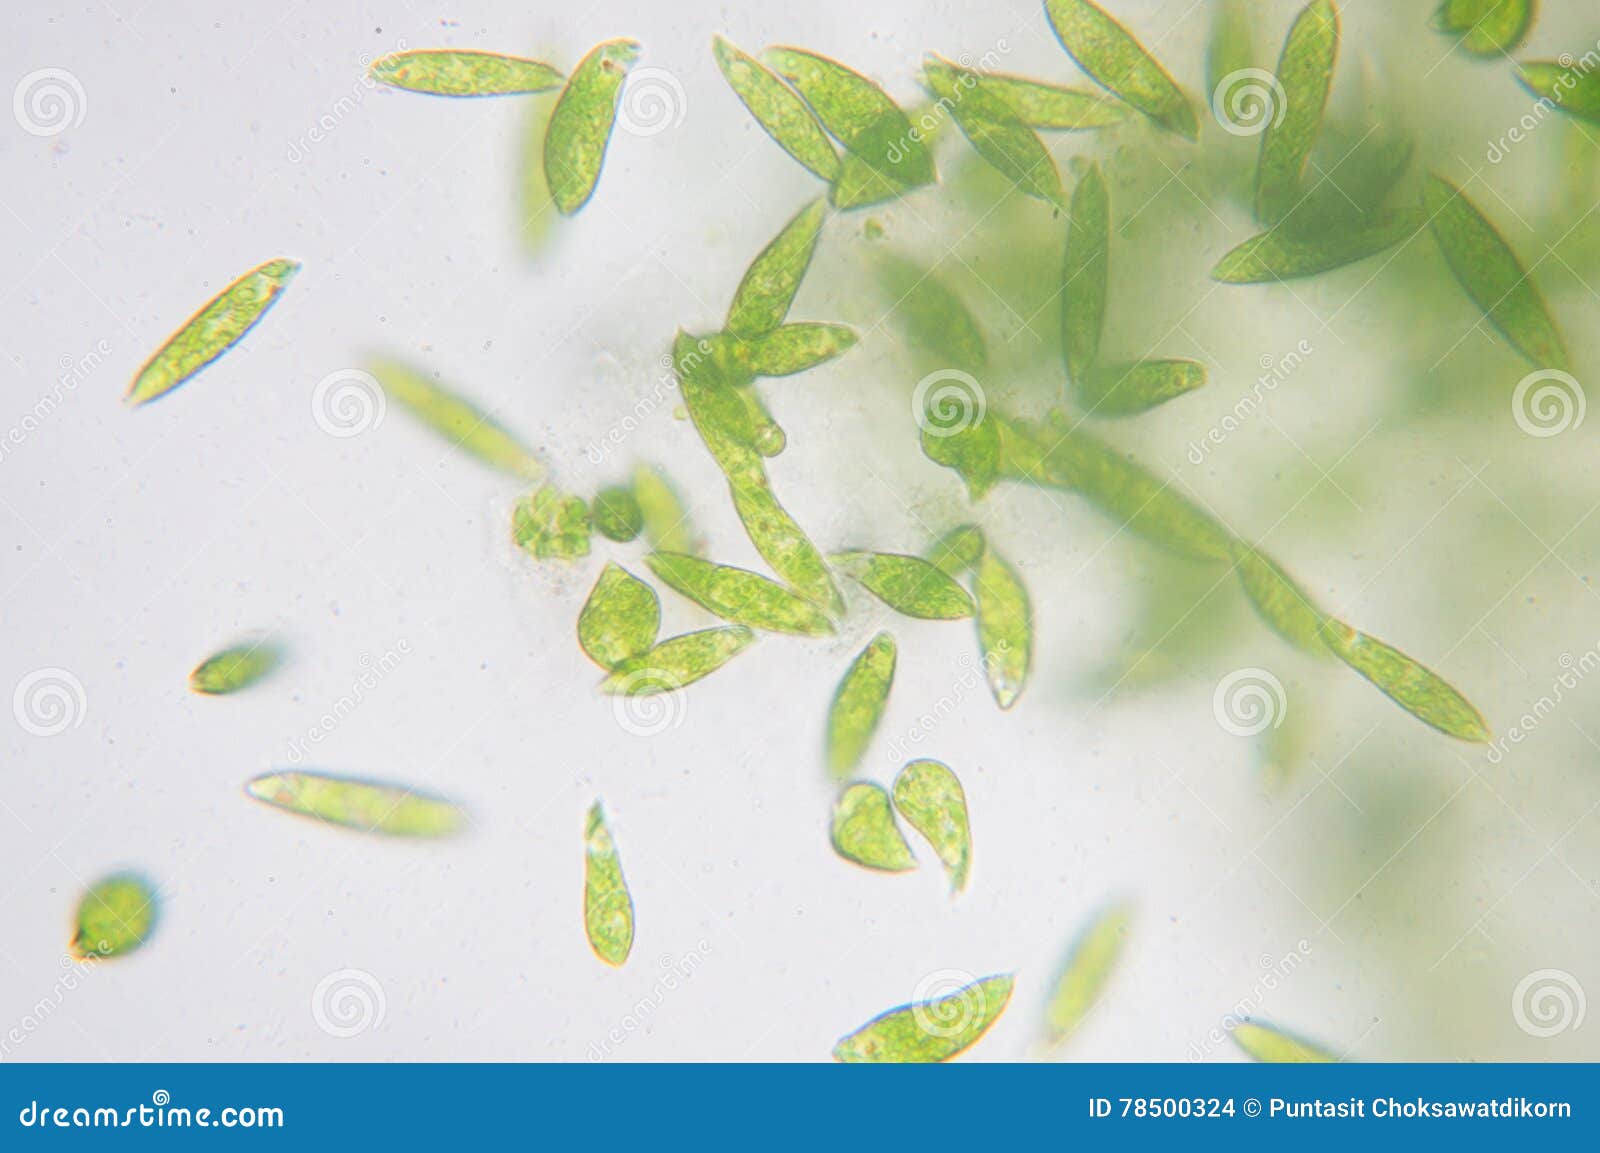 裸藻图片 显微镜,裸藻显微镜 - 伤感说说吧